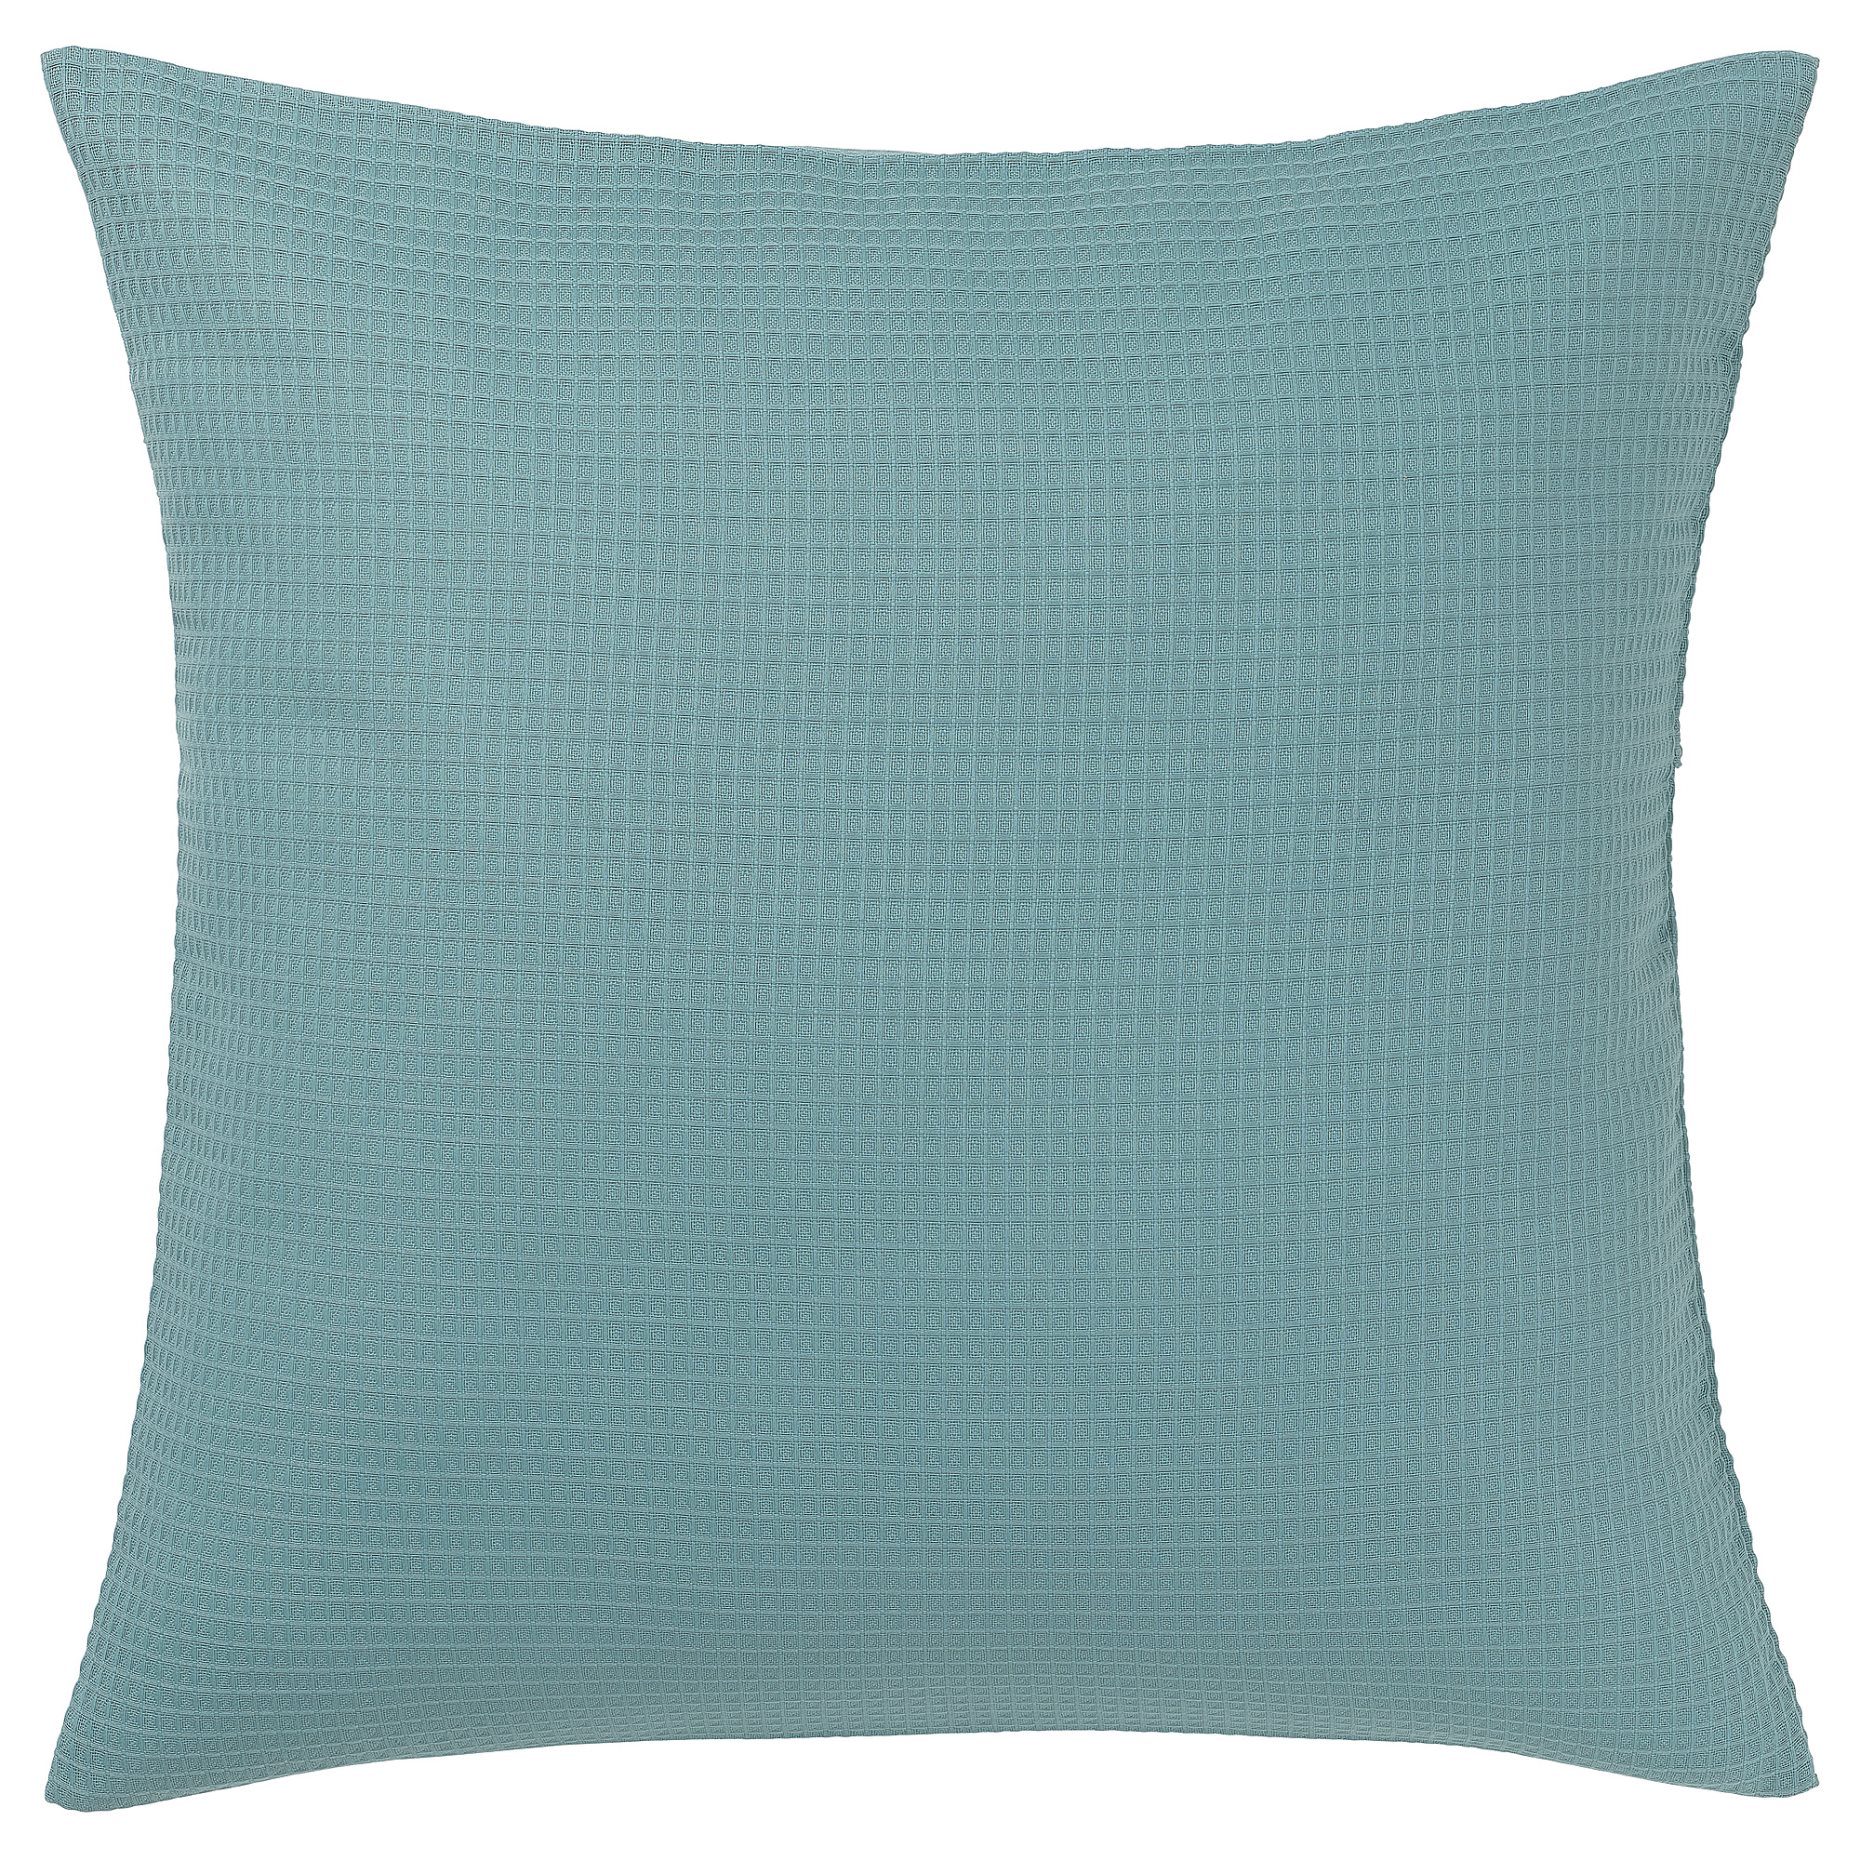 EBBATILDA, cushion cover, 50x50 cm, 004.930.16